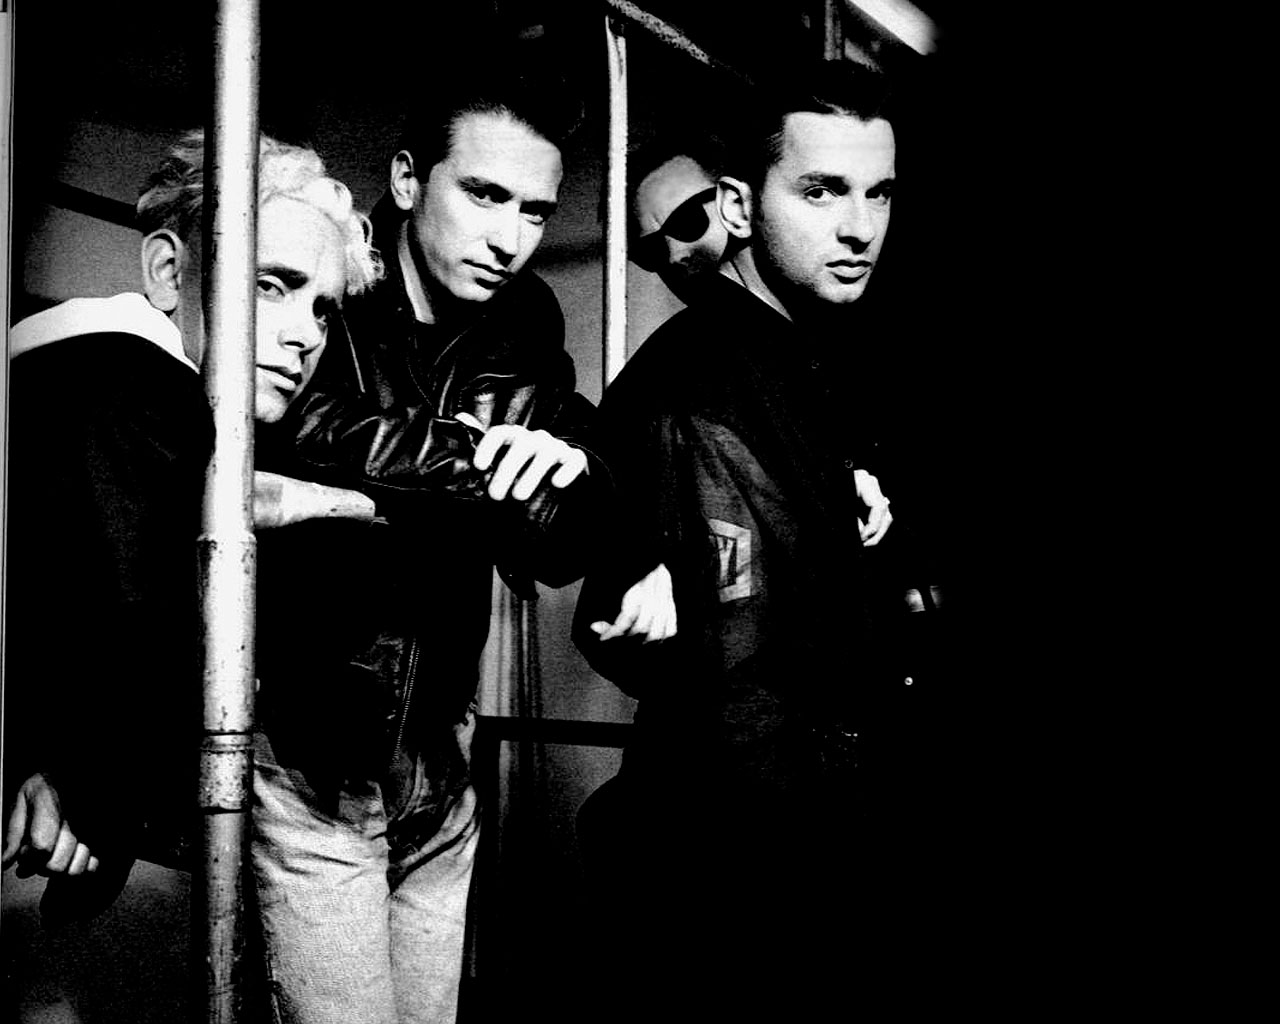 1995 depeche mode